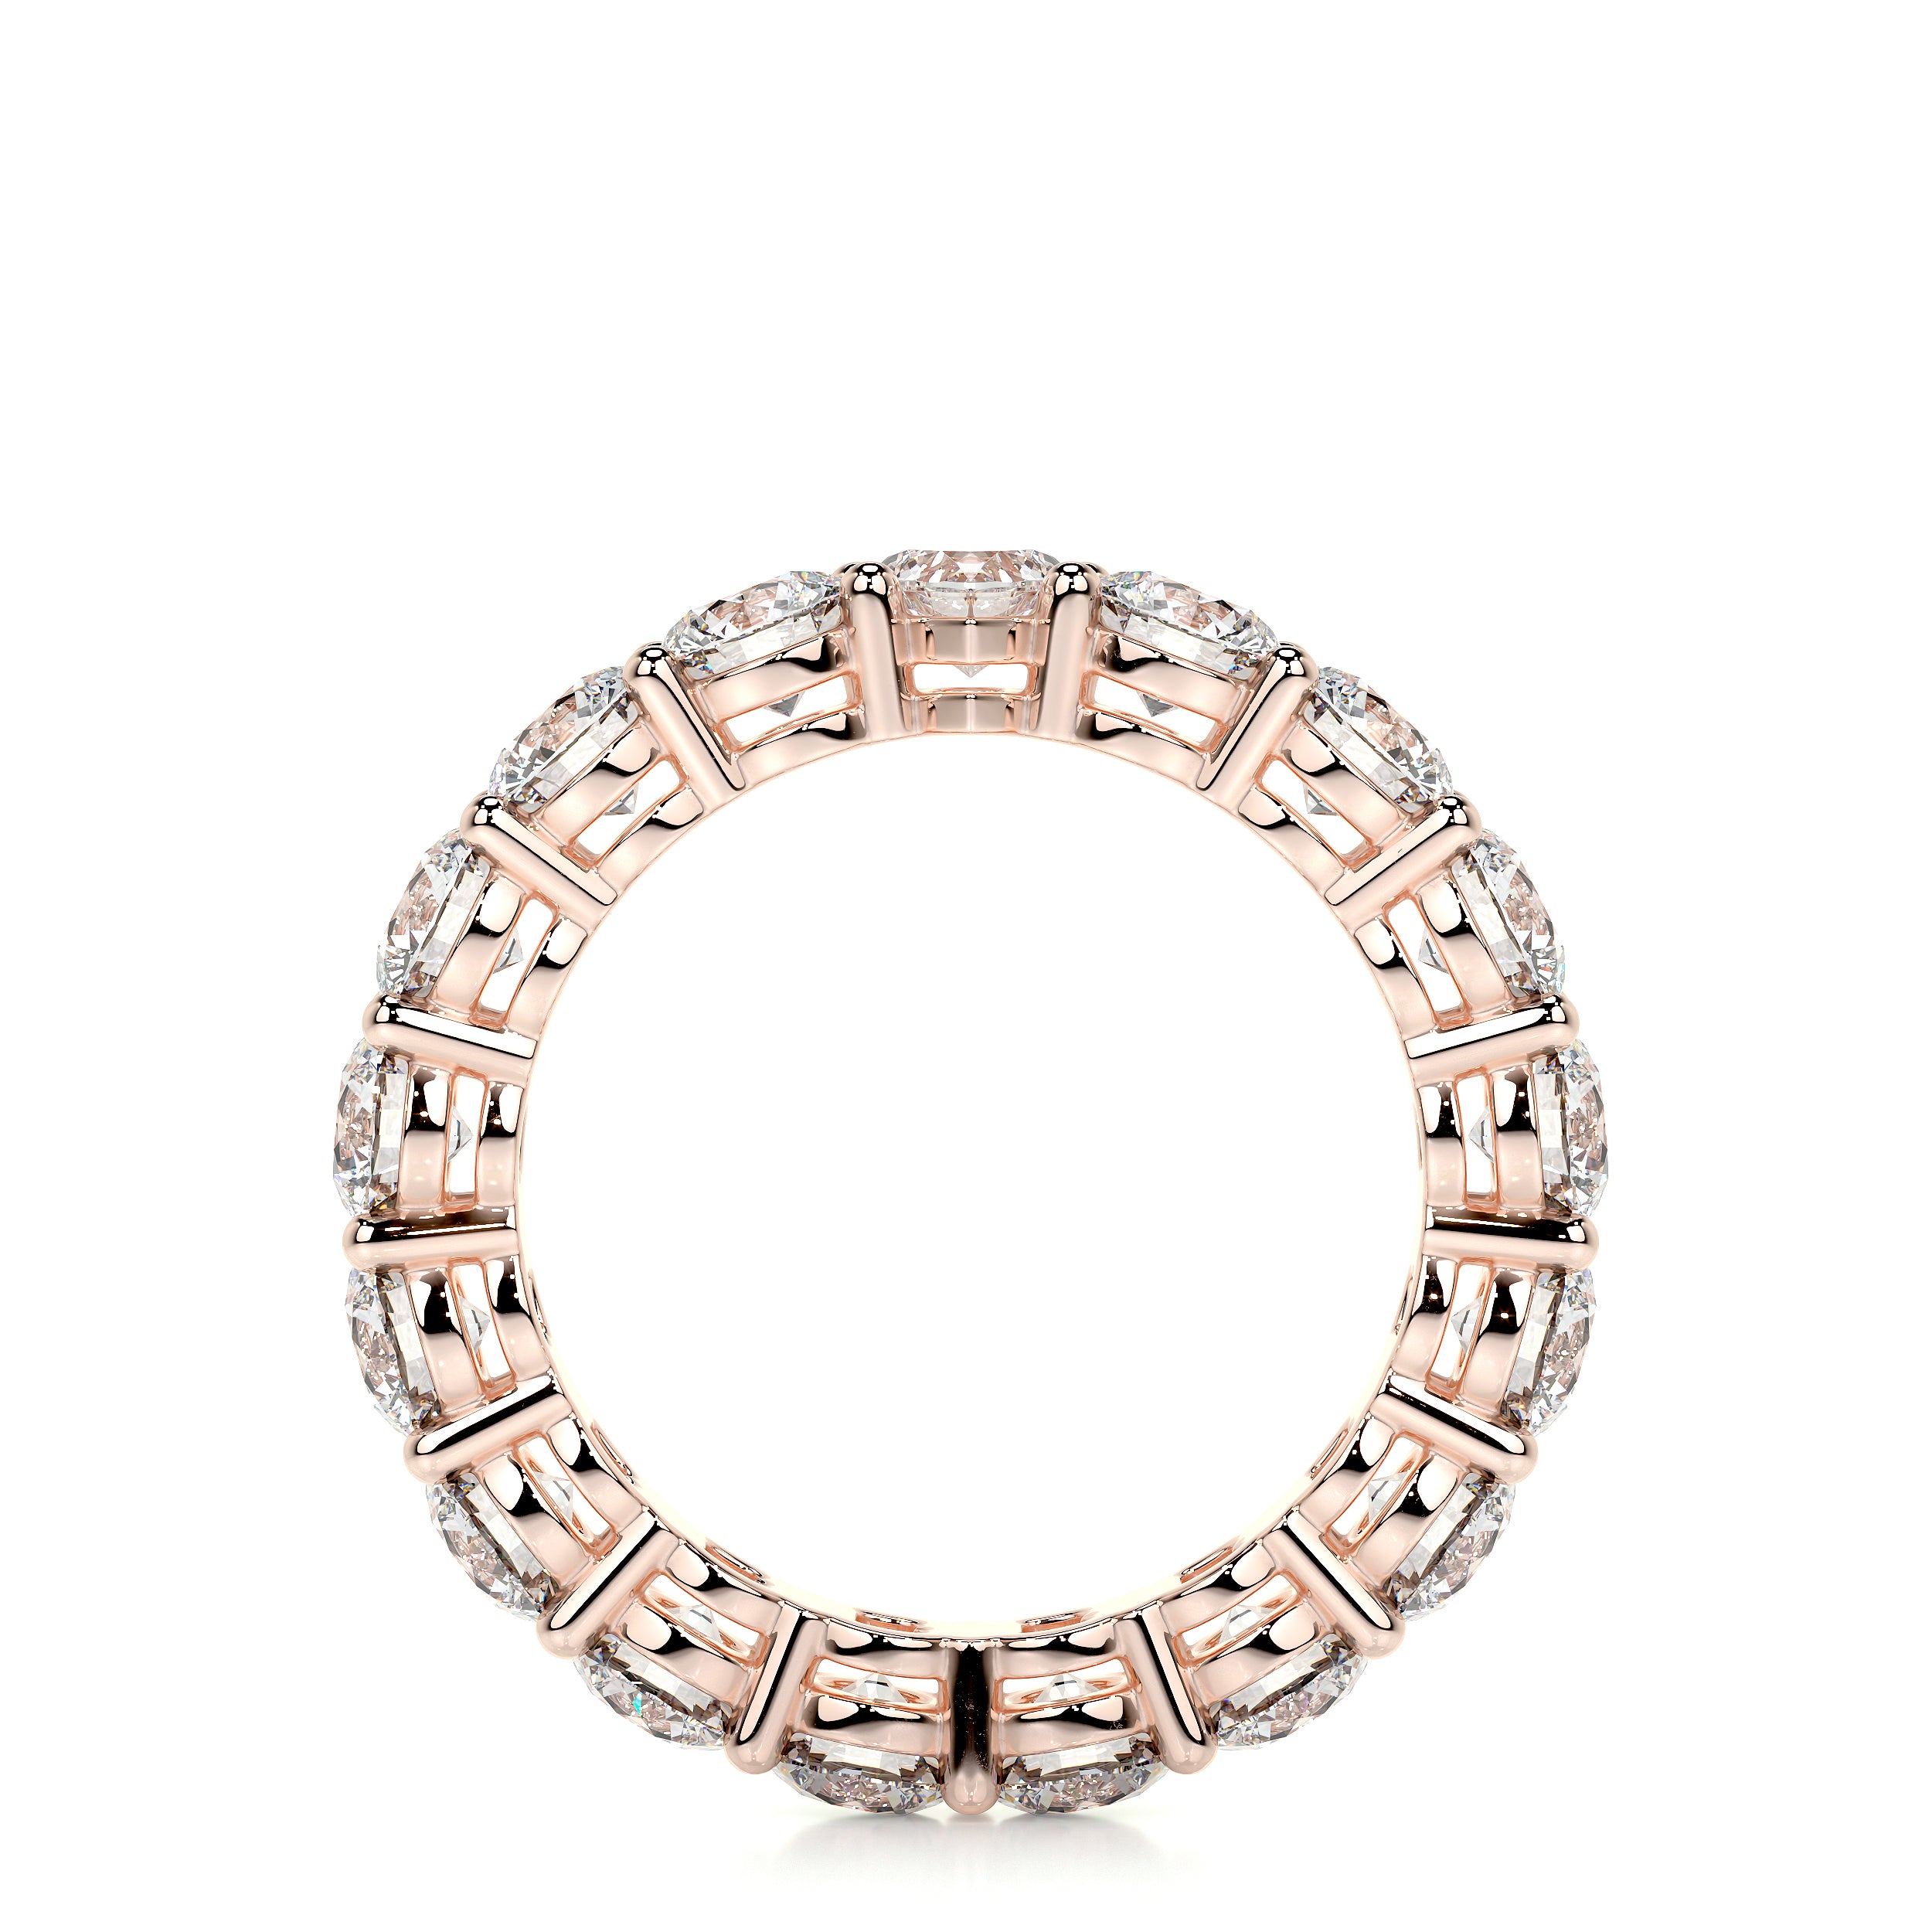 Anne Lab Grown Diamond Wedding Ring -14K Rose Gold